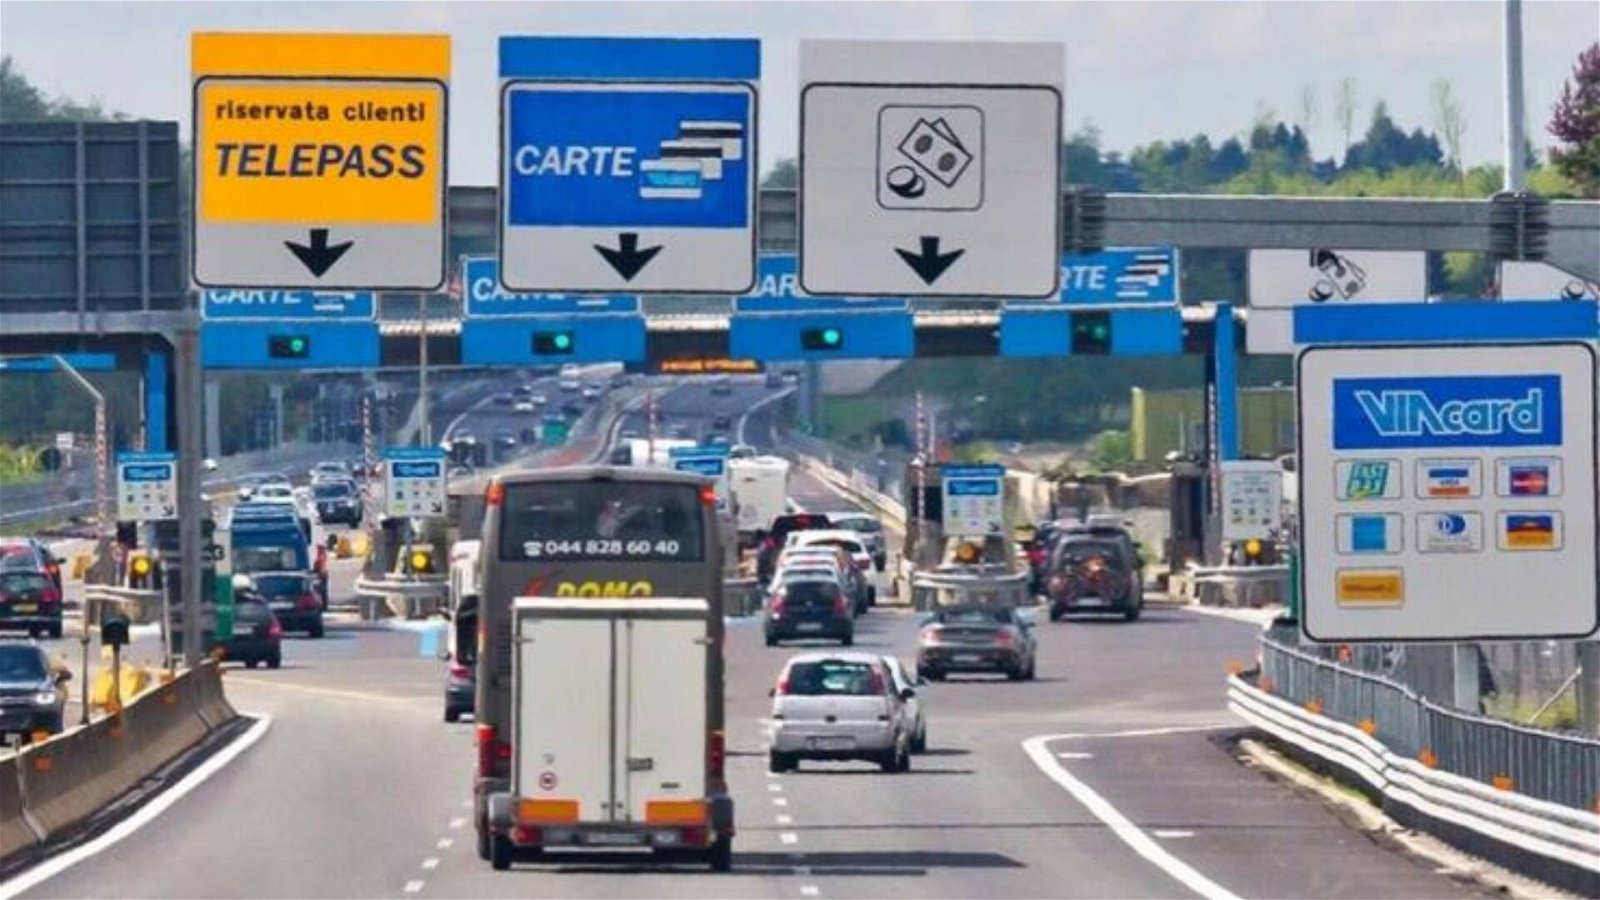 Immagine di Nuovo pedaggio autostradale: tariffe più alte per auto più inquinanti